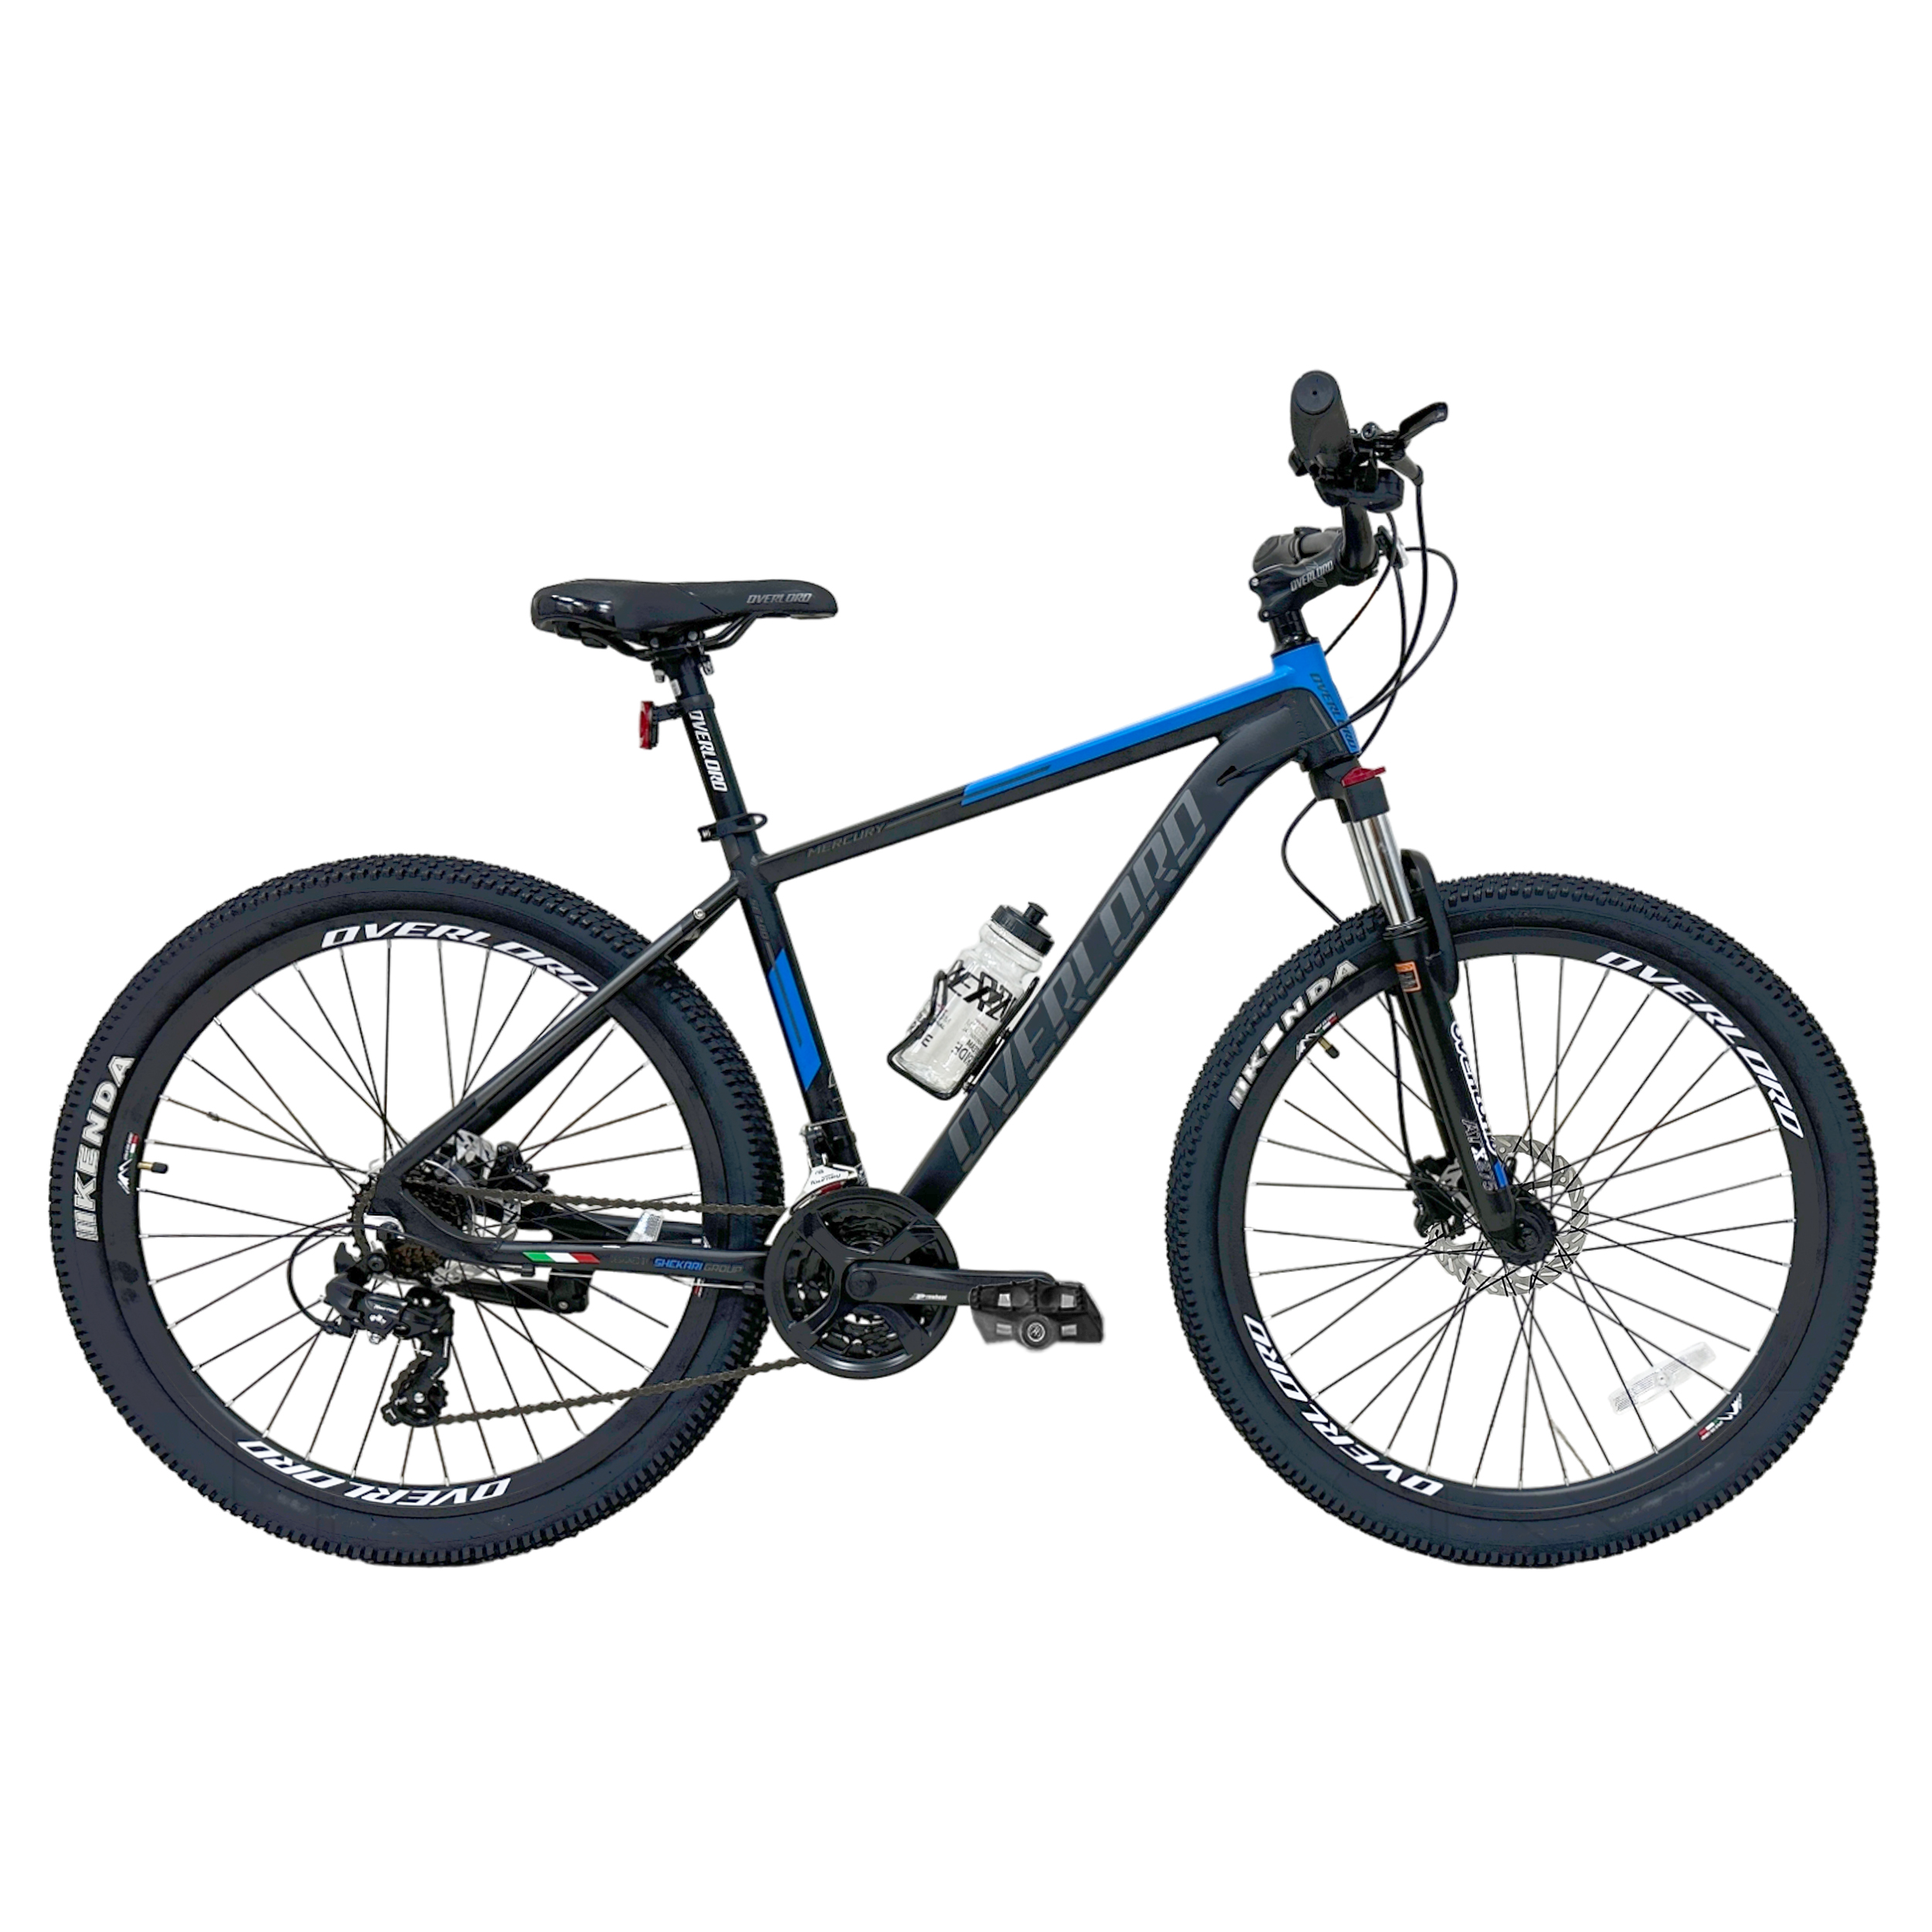 نکته خرید - قیمت روز دوچرخه کوهستان اورلورد مدل MERCURY SE 2.0D هیدرولیکی سایز طوقه 27.5 خرید